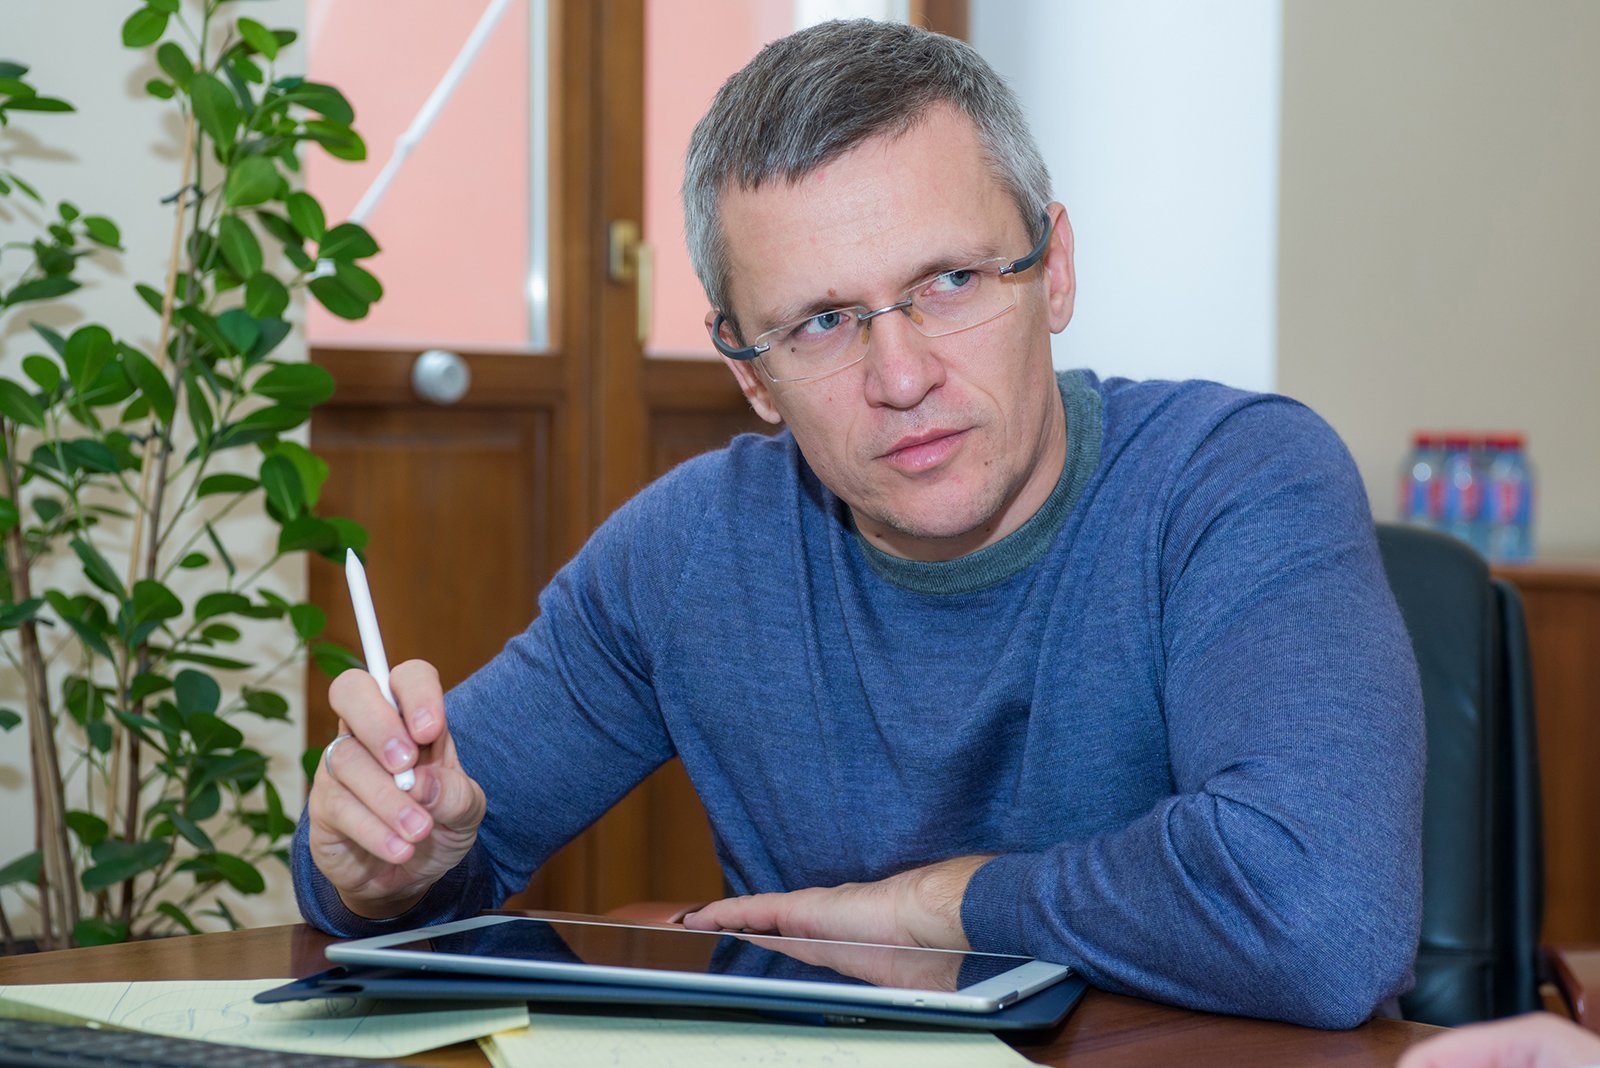 Артем Ермолаев, глава Департамента информационных технологий города Москвы